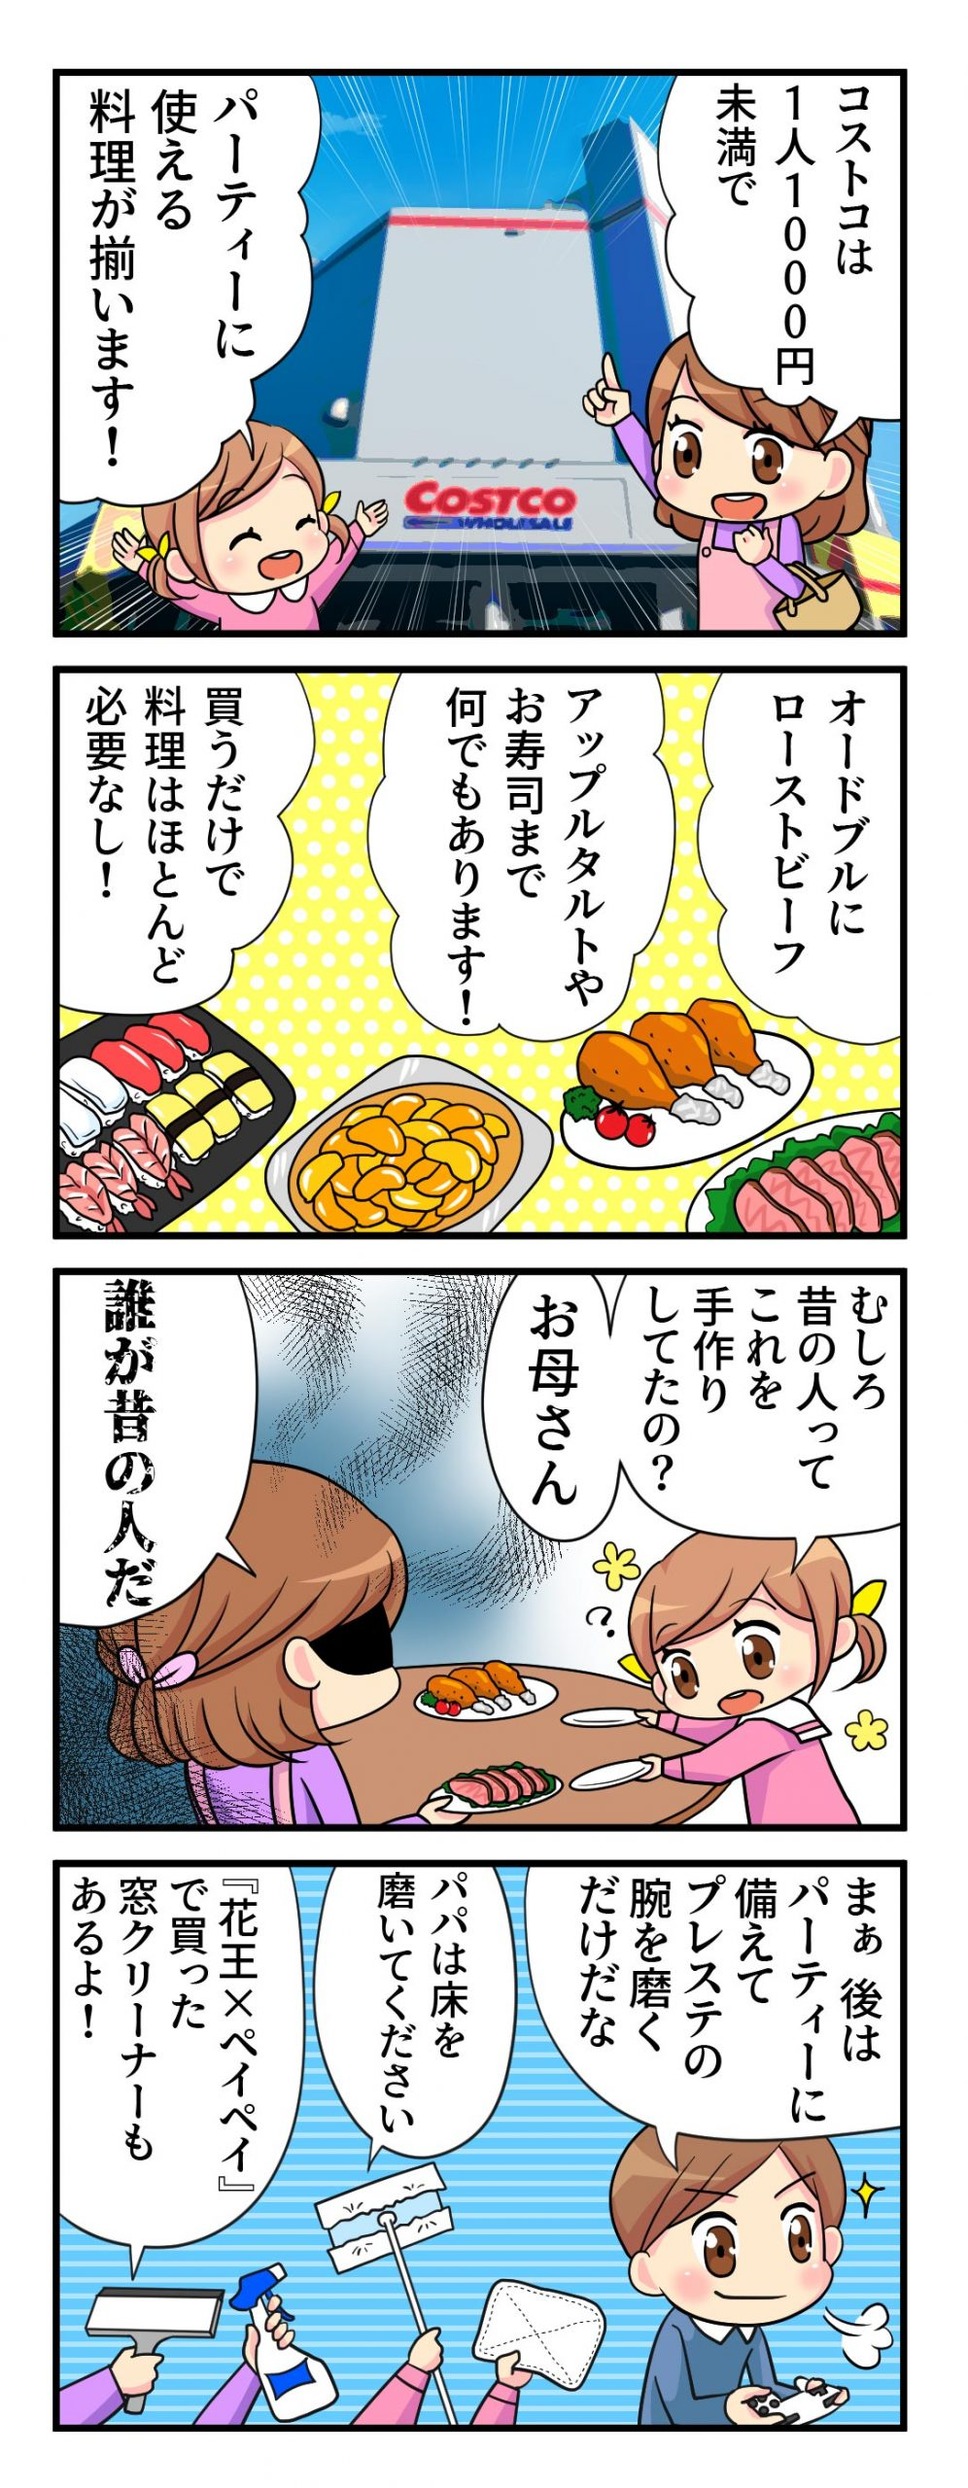 【コストコ】1人1000円でホームパーティー（8人分7品）　節約簡単料理で楽しもう